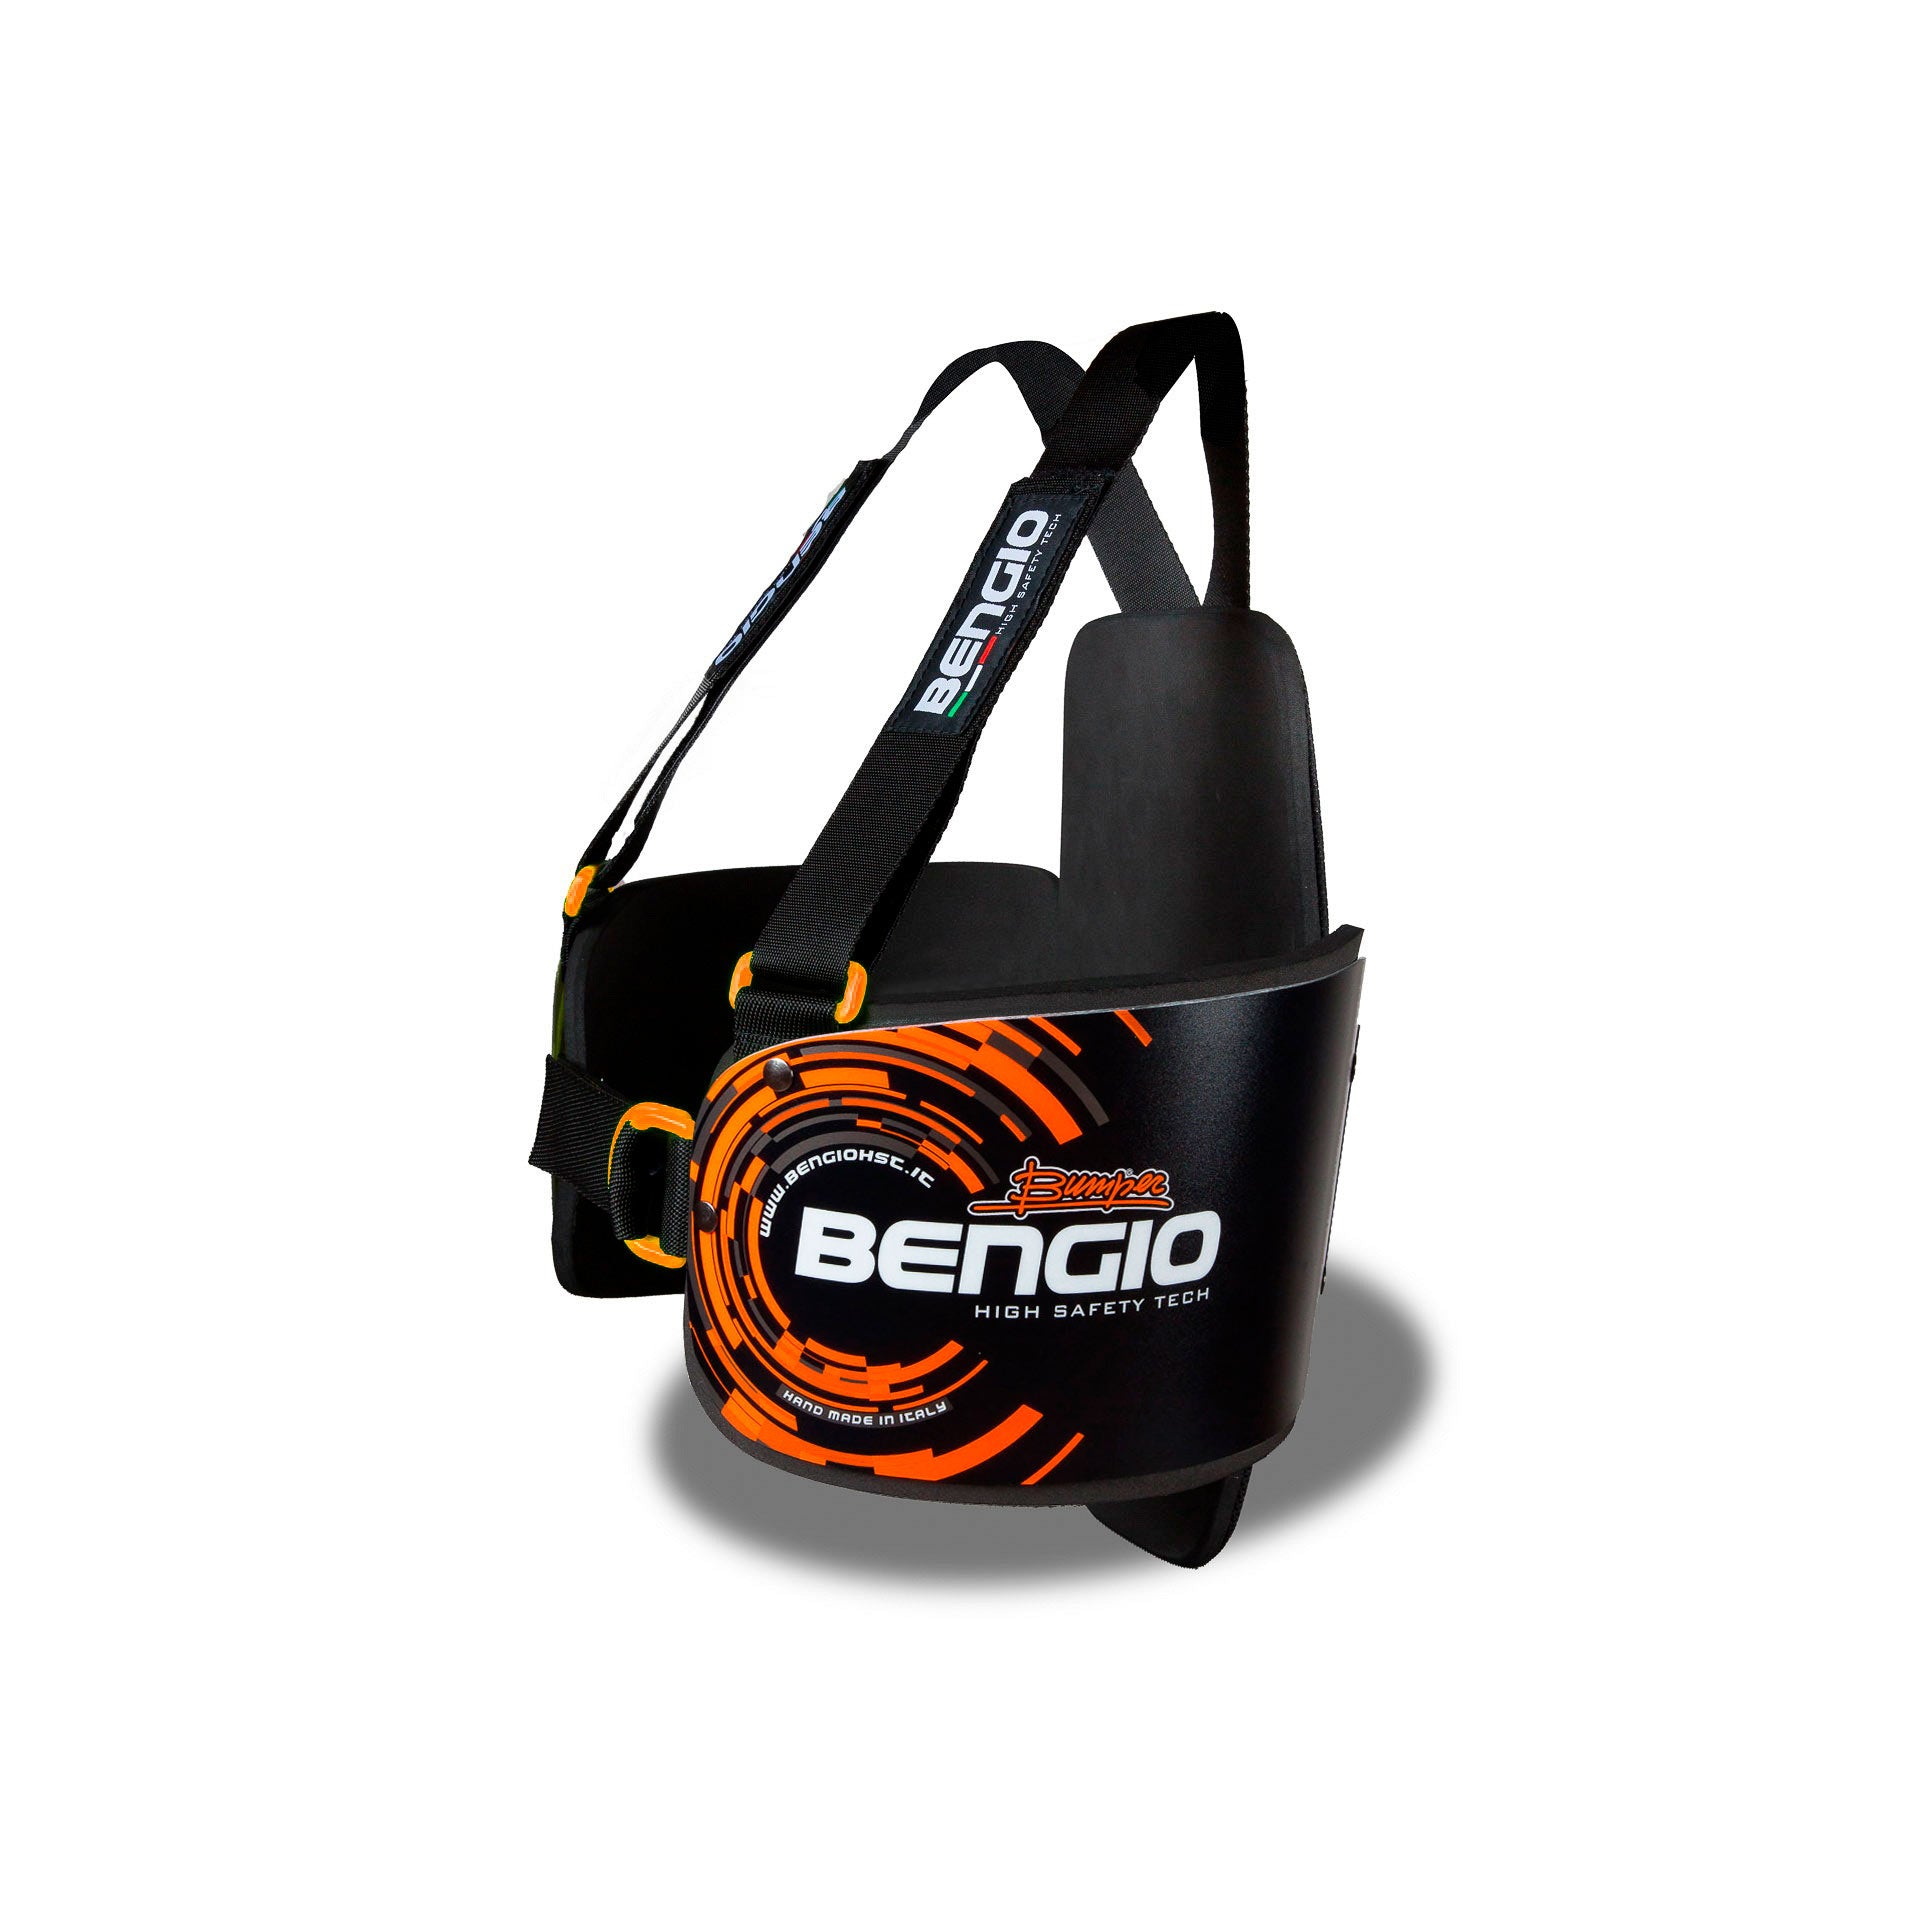 BENGIO STDPLXLBO BUMPER Plus Захист ребер для картингу, чорний/помаранчевий, розмір XL Photo-1 